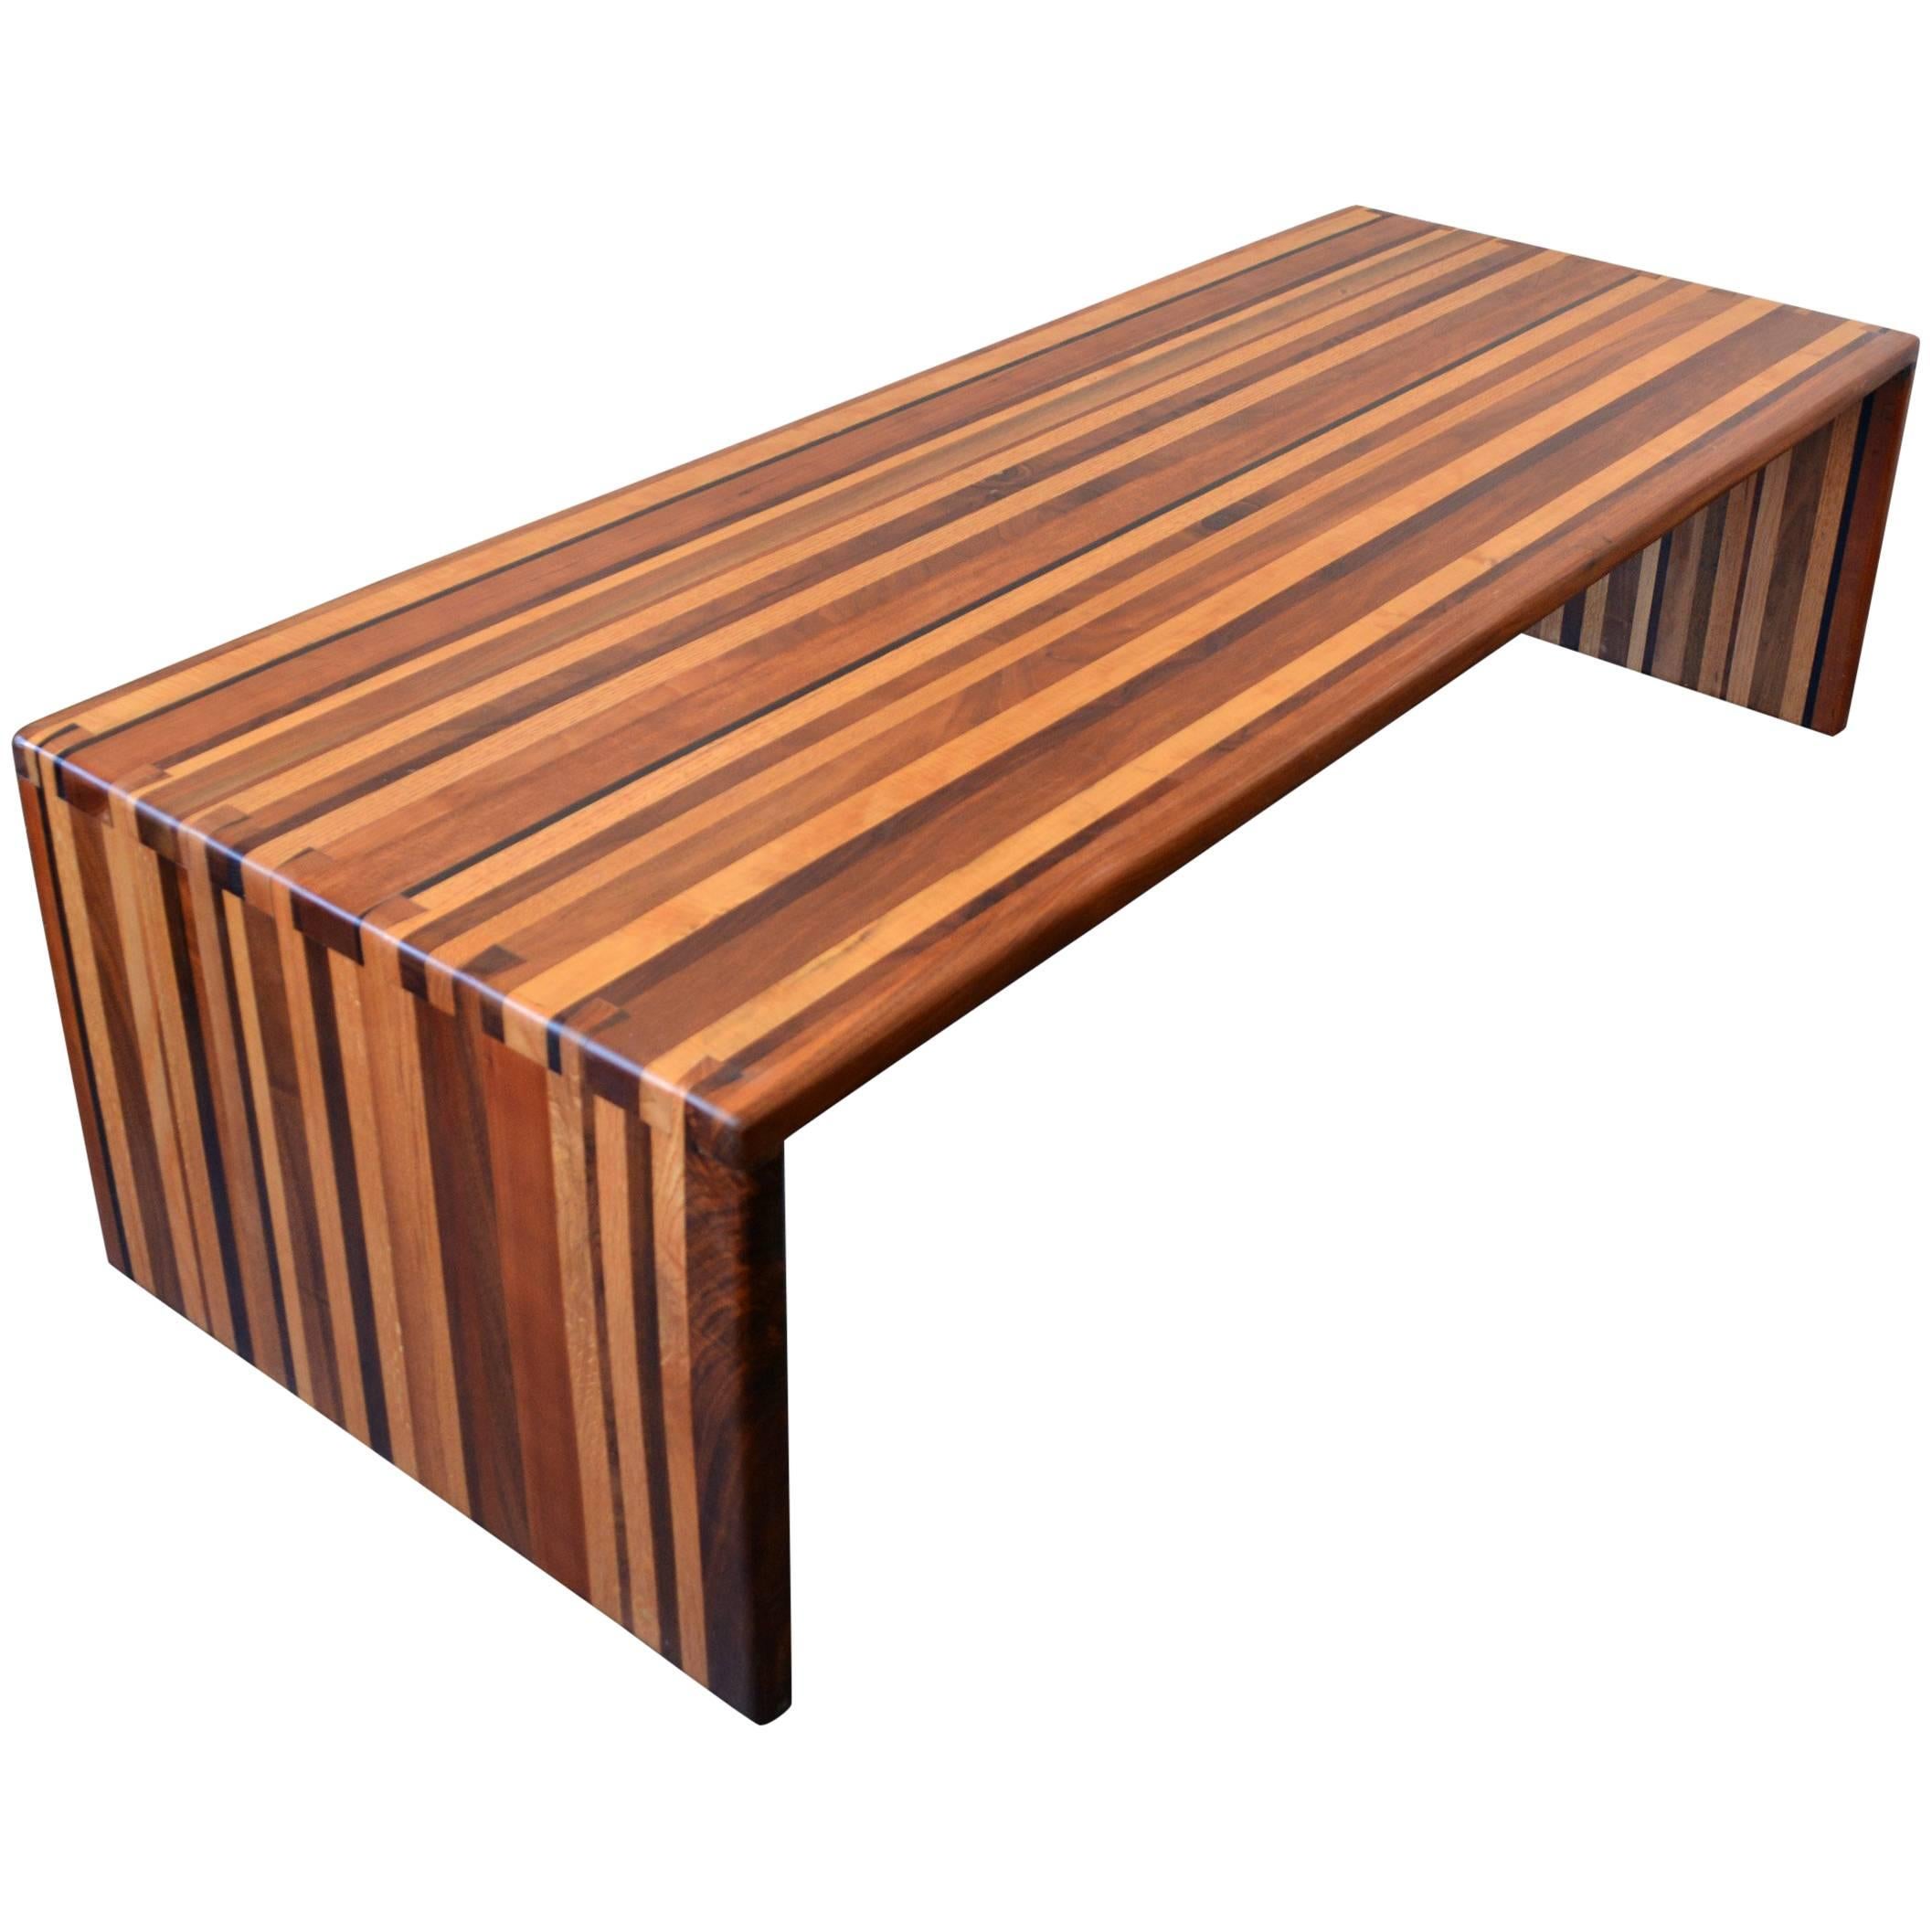 Table basse ou banc en bois mixtes stratifié California Craft Studio